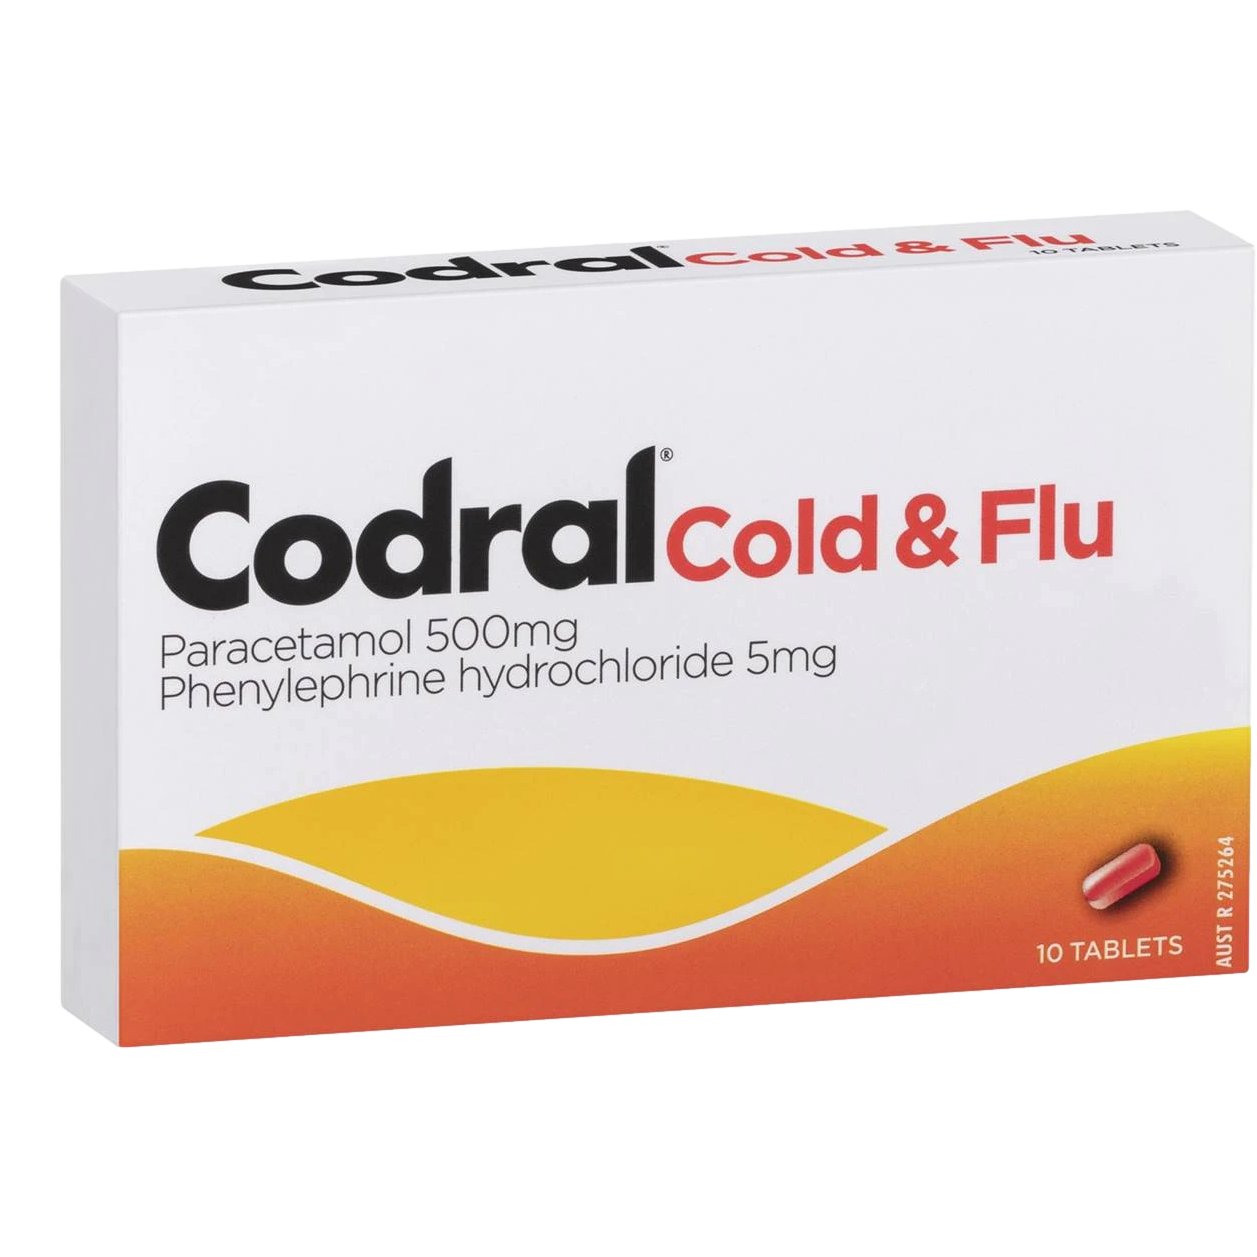 Codral Cold & Flu Tablets 10 Pack